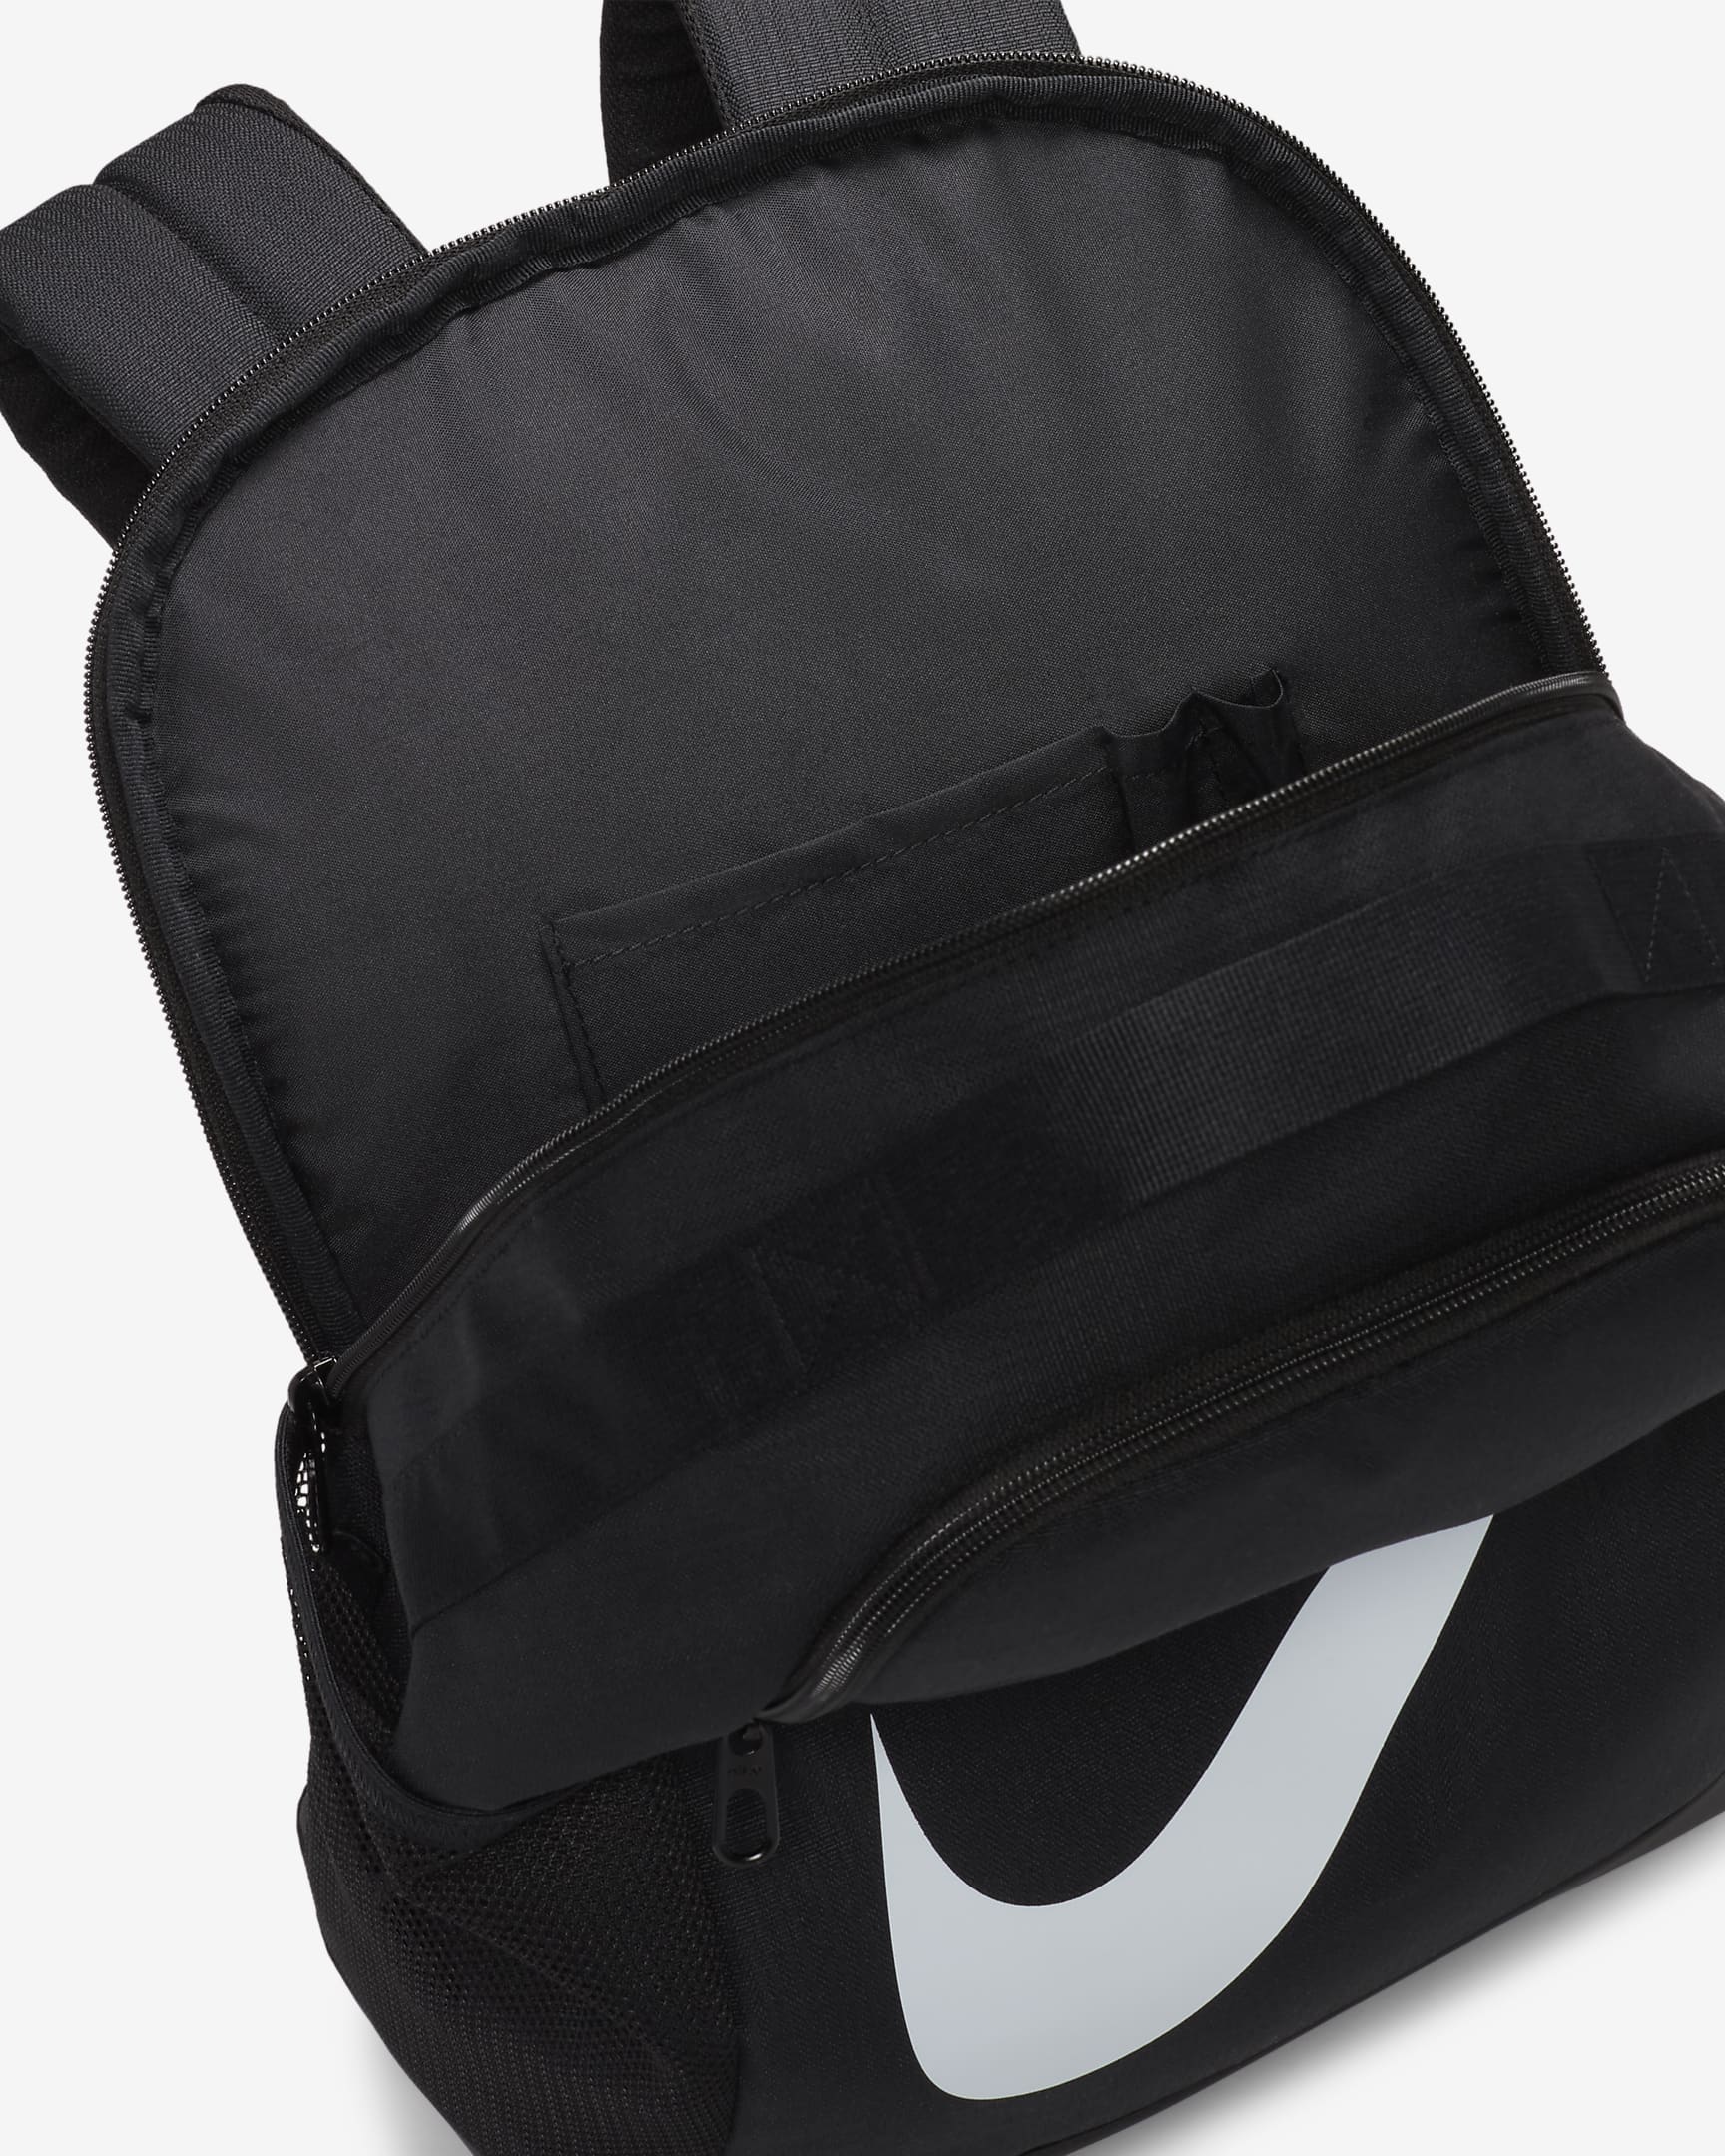 Nike Brasilia Kids' Backpack (18L). Nike AU